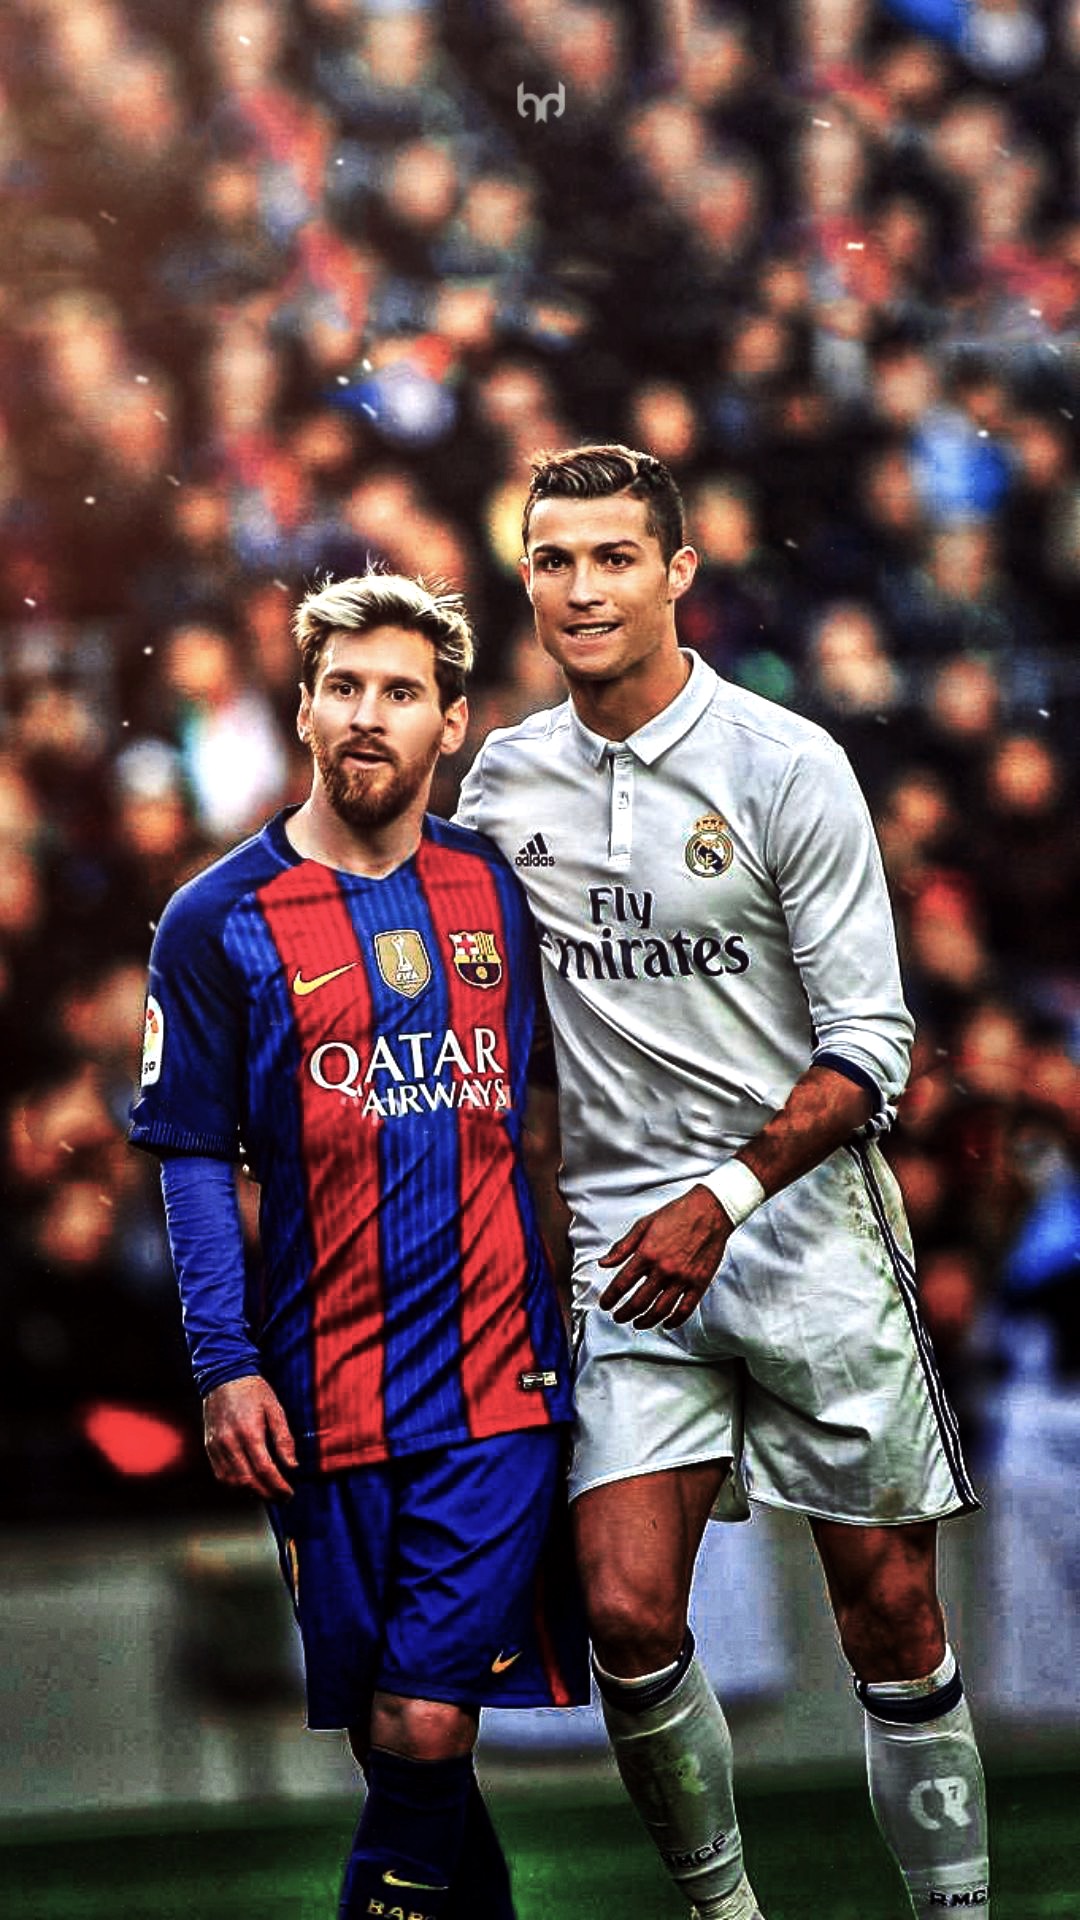 Nếu bạn yêu bóng đá và cả hai cầu thủ xuất sắc nhất thế giới - Messi và Ronaldo, thì chắc chắn không thể bỏ qua bộ sưu tập hình nền tuyệt vời này. Với những bức hình tuyệt đẹp và độc đáo, bạn sẽ luôn muốn thay đổi hình nền điện thoại của mình với những bức ảnh mới nhất của hai siêu sao này!